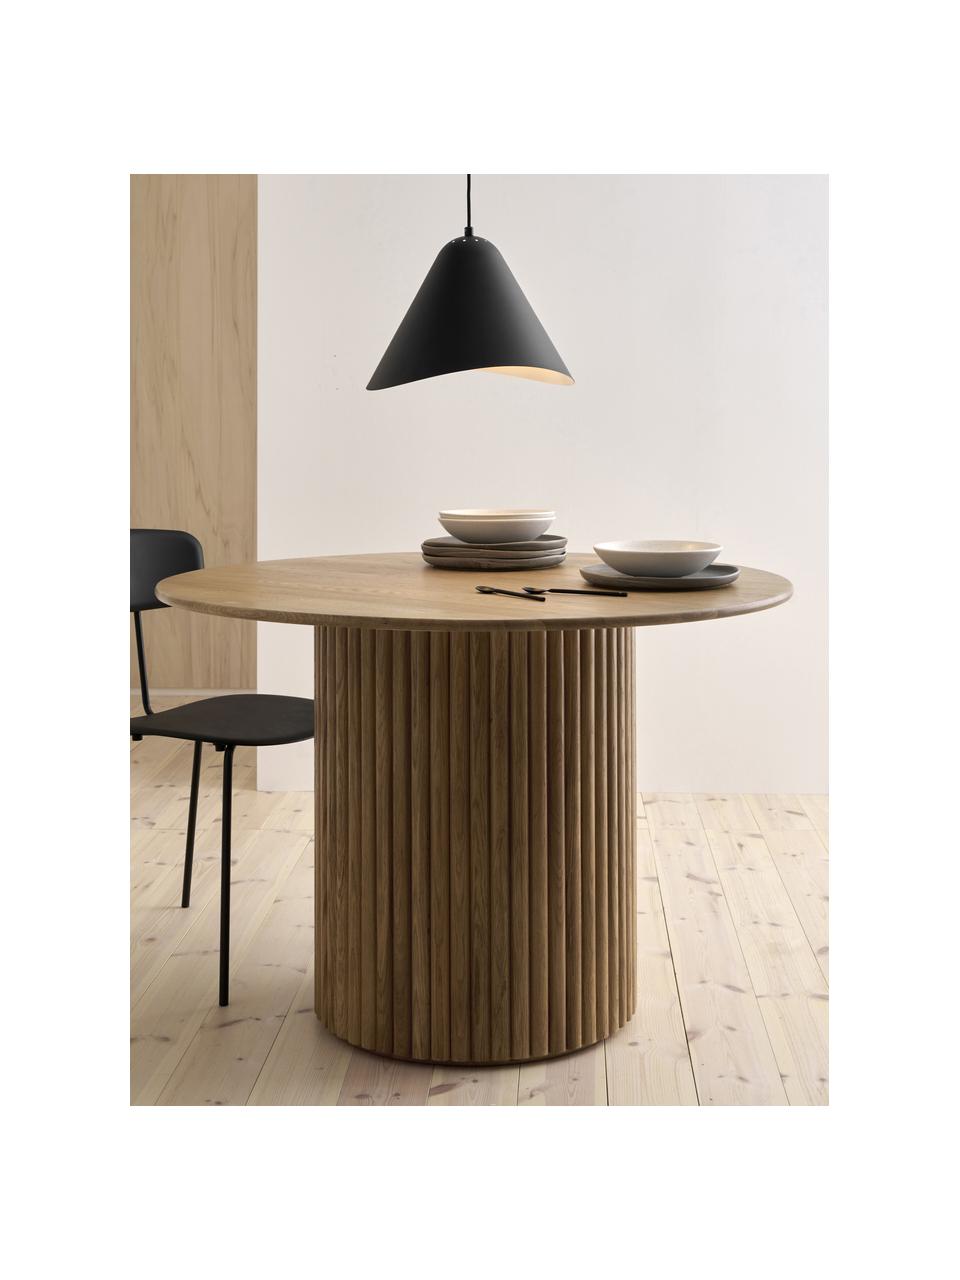 Kulatý jídelní stůl z dubového dřeva Janina, Ø 110 cm, Masivní dubové dřevo, lakovaná MDF deska (dřevovláknitá deska střední hustoty), Lakované dubové dřevo, Ø 110 cm, V 75 cm